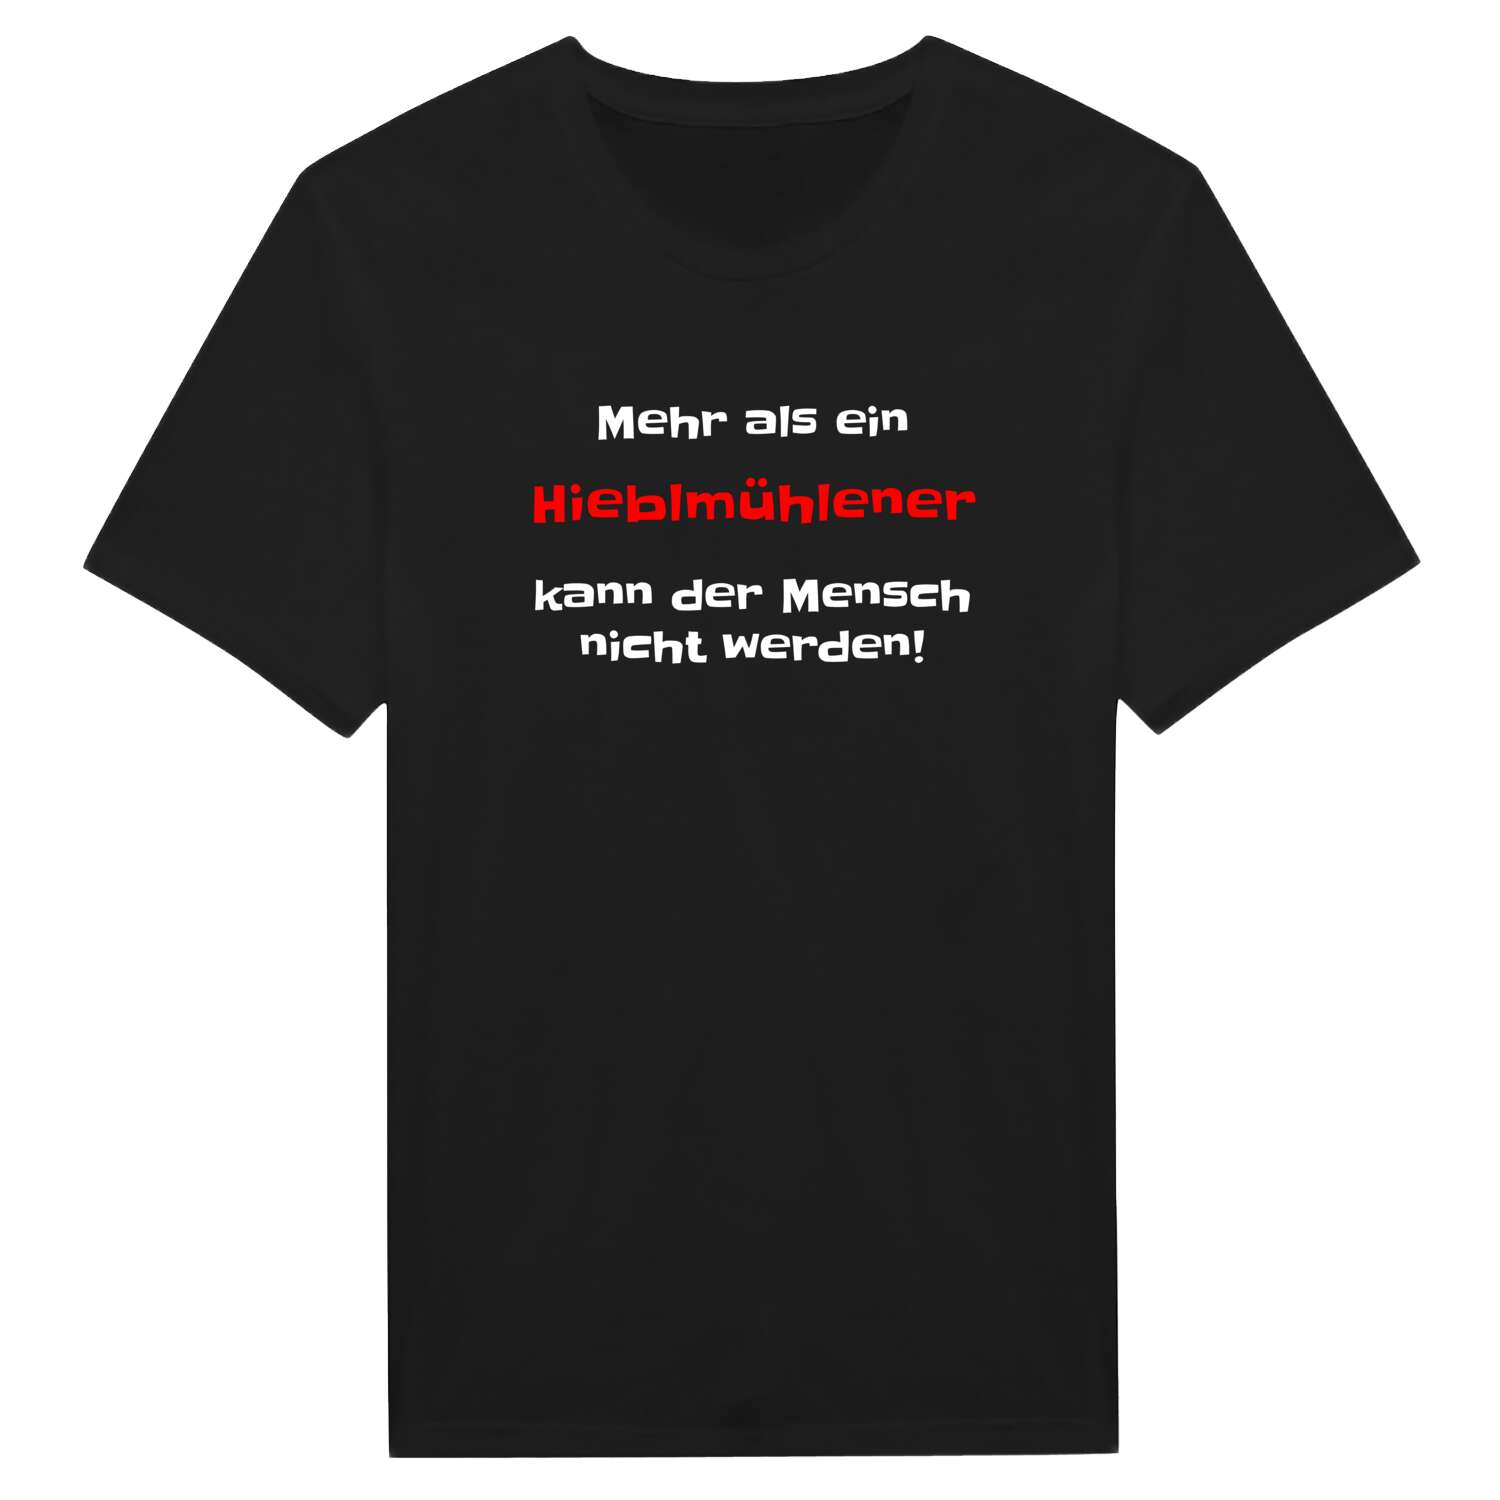 Hieblmühle T-Shirt »Mehr als ein«